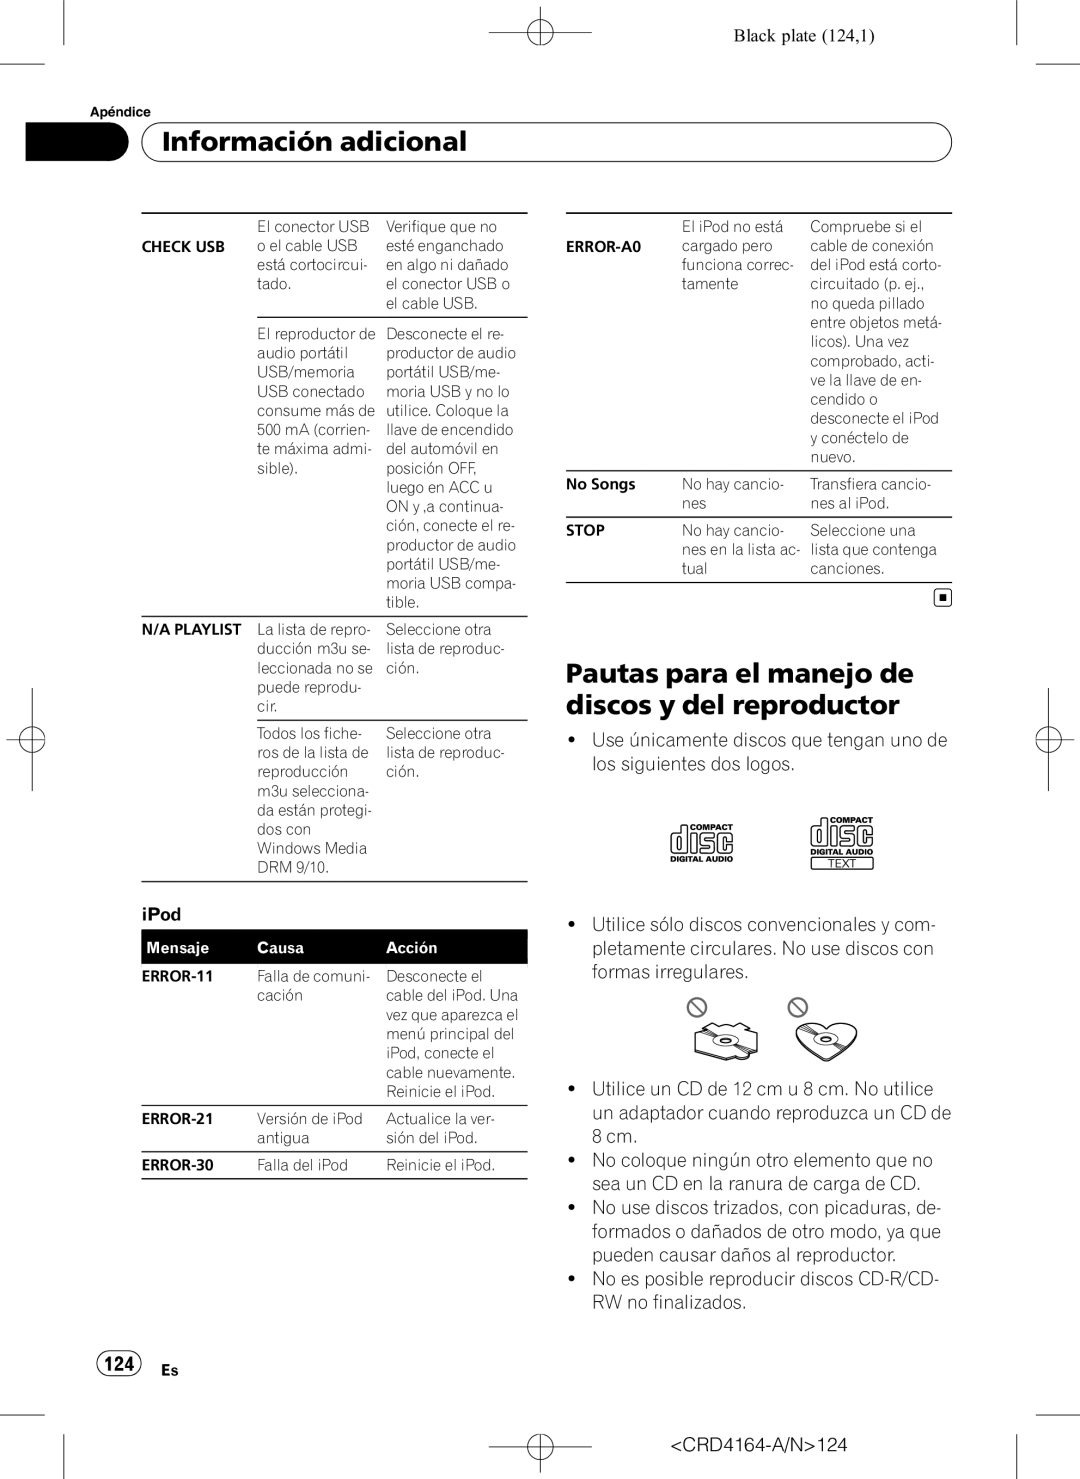 Pioneer DEH-P7950UB operation manual Pautas para el manejo de discos y del reproductor, 124 Es, Información adicional 